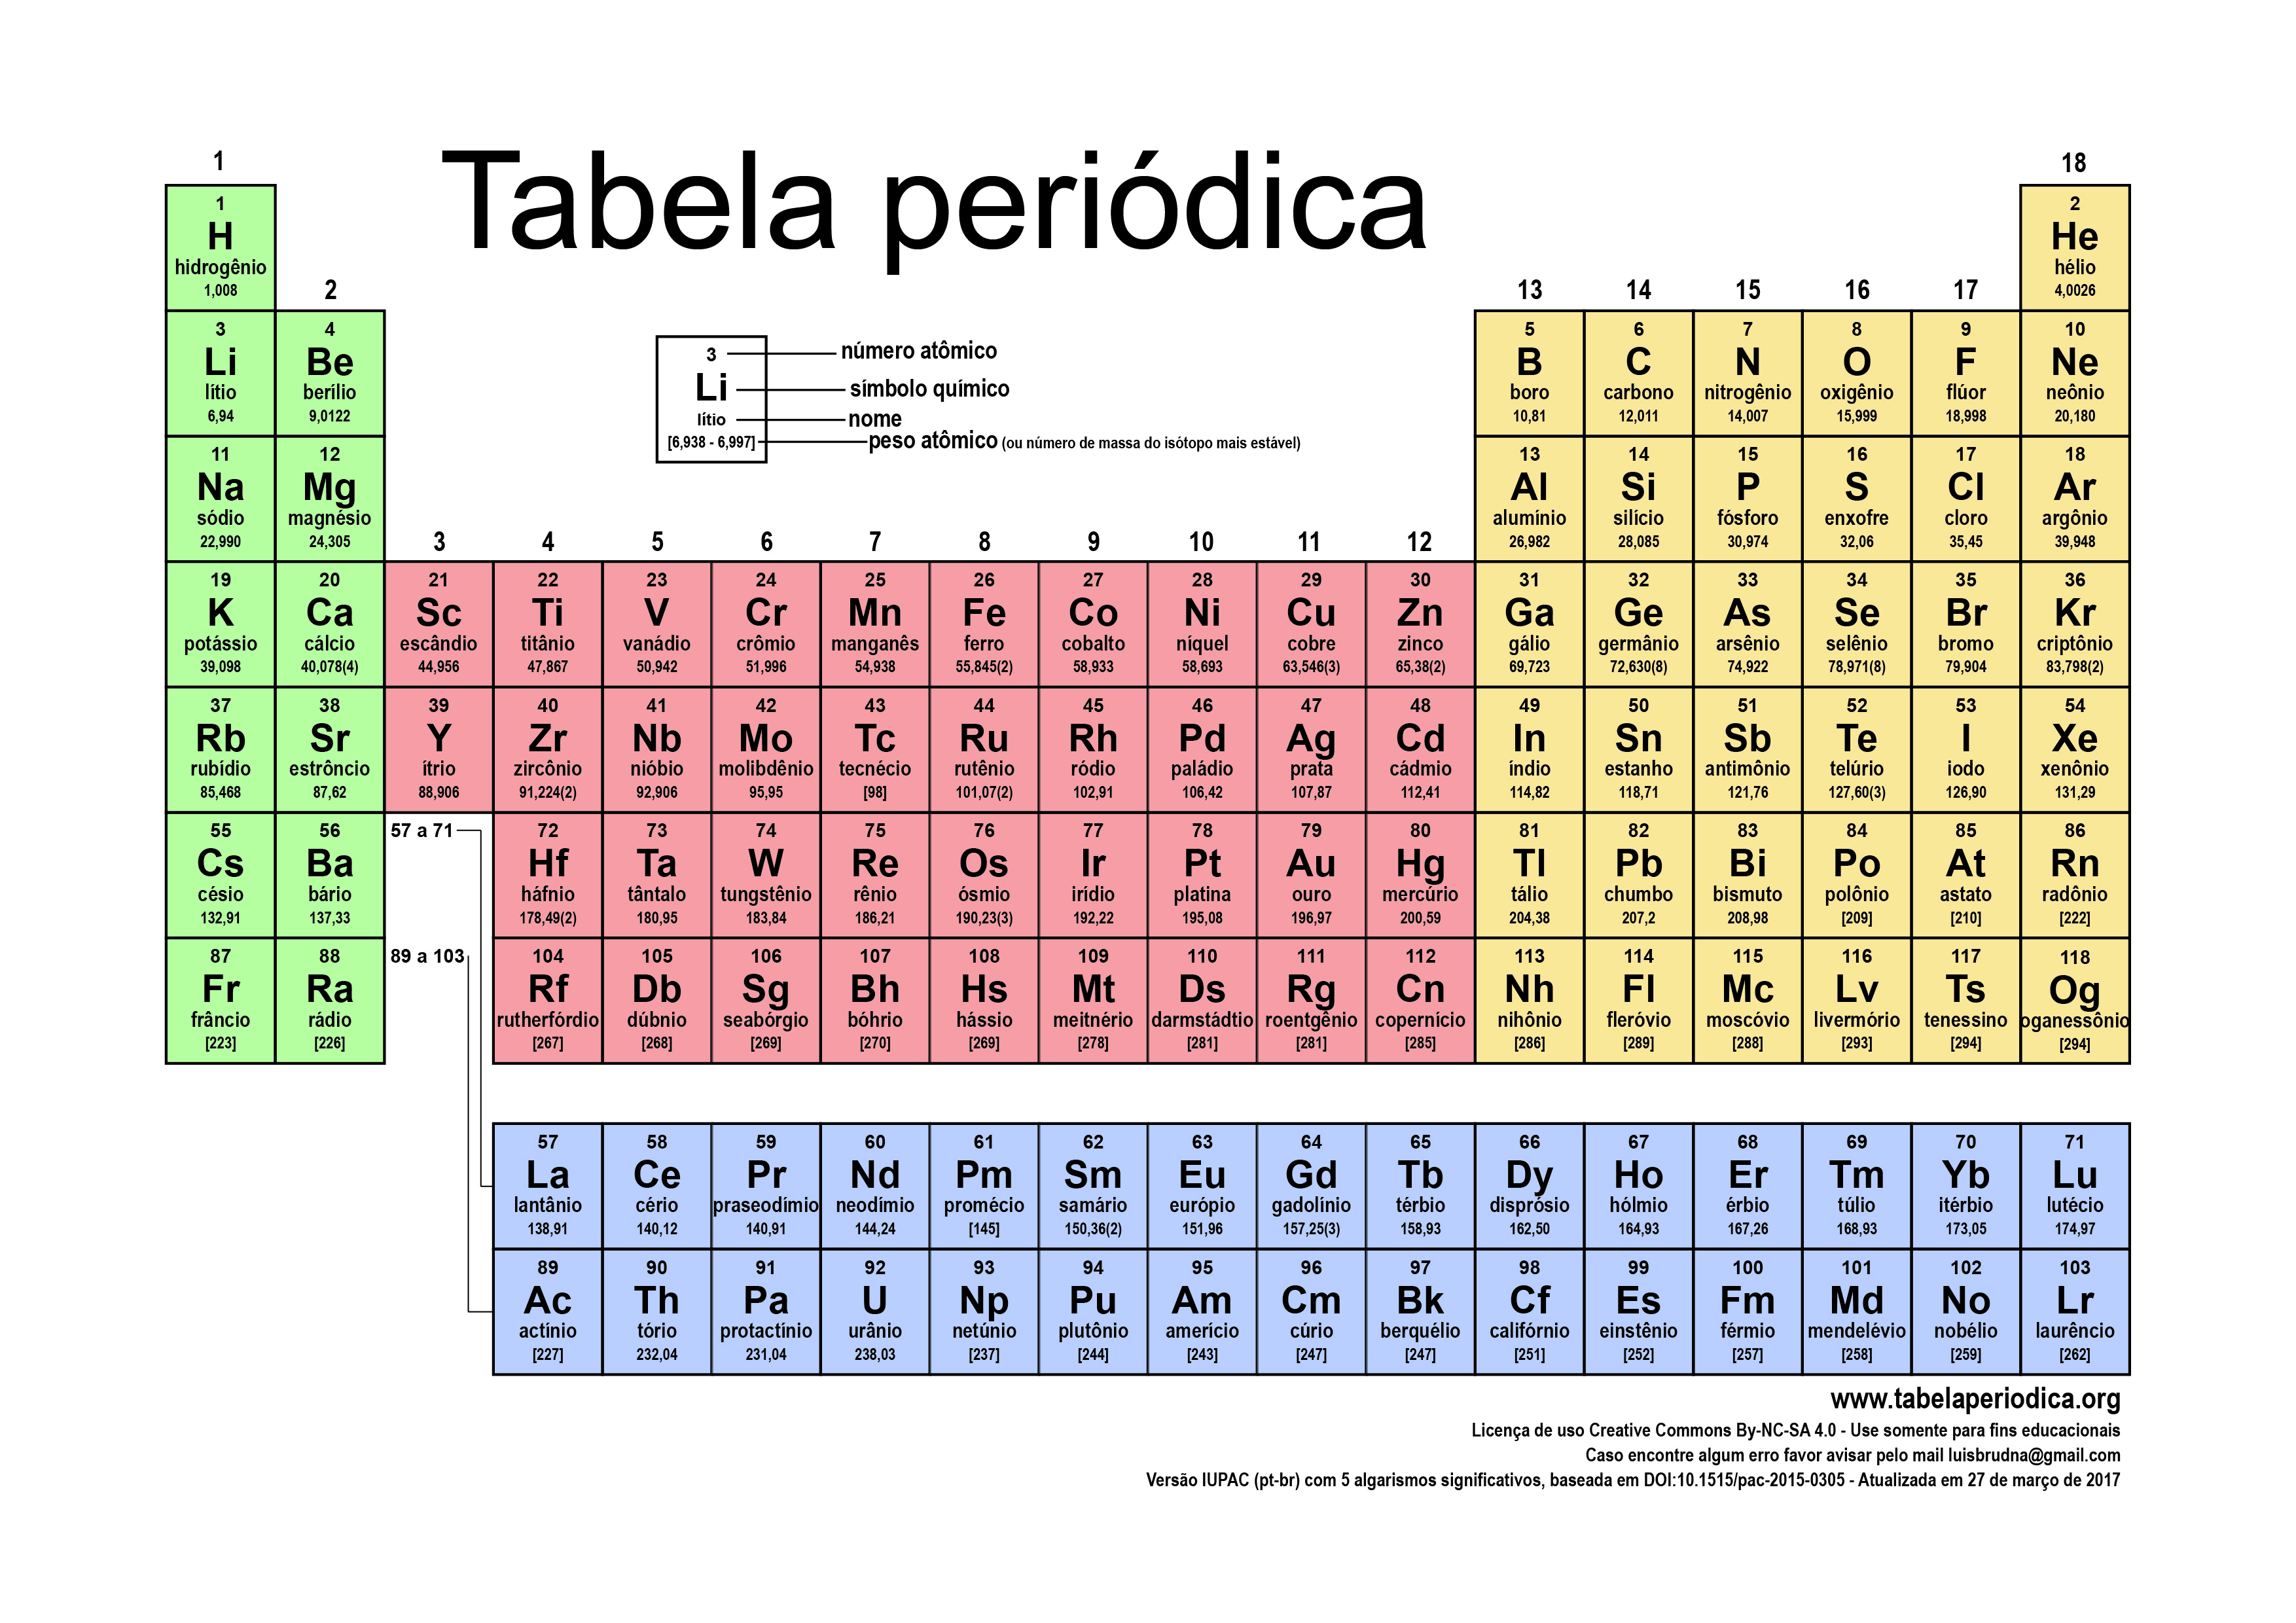 Resultado de imagem para tabela periodica completa